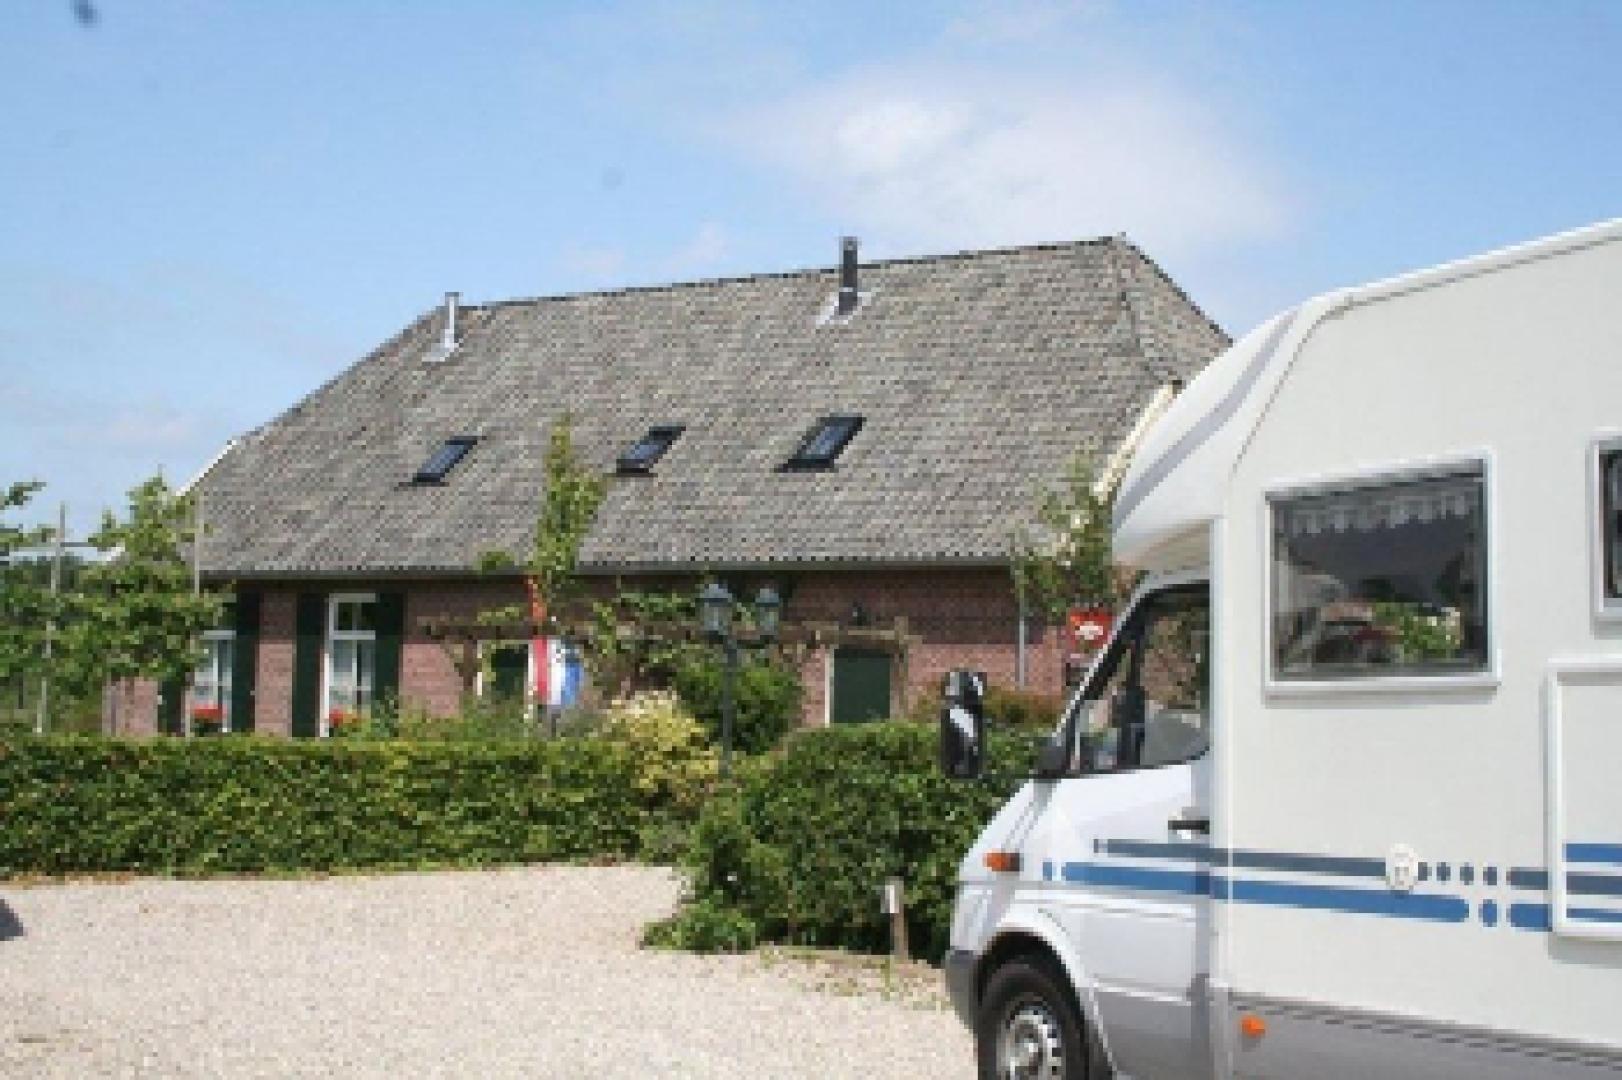 Wohnmobilplätze, NatuurlijkBUITEN, Sinderen, Gemeinde Oude IJsselstreek, Achterhoek, Gelderland, Holland